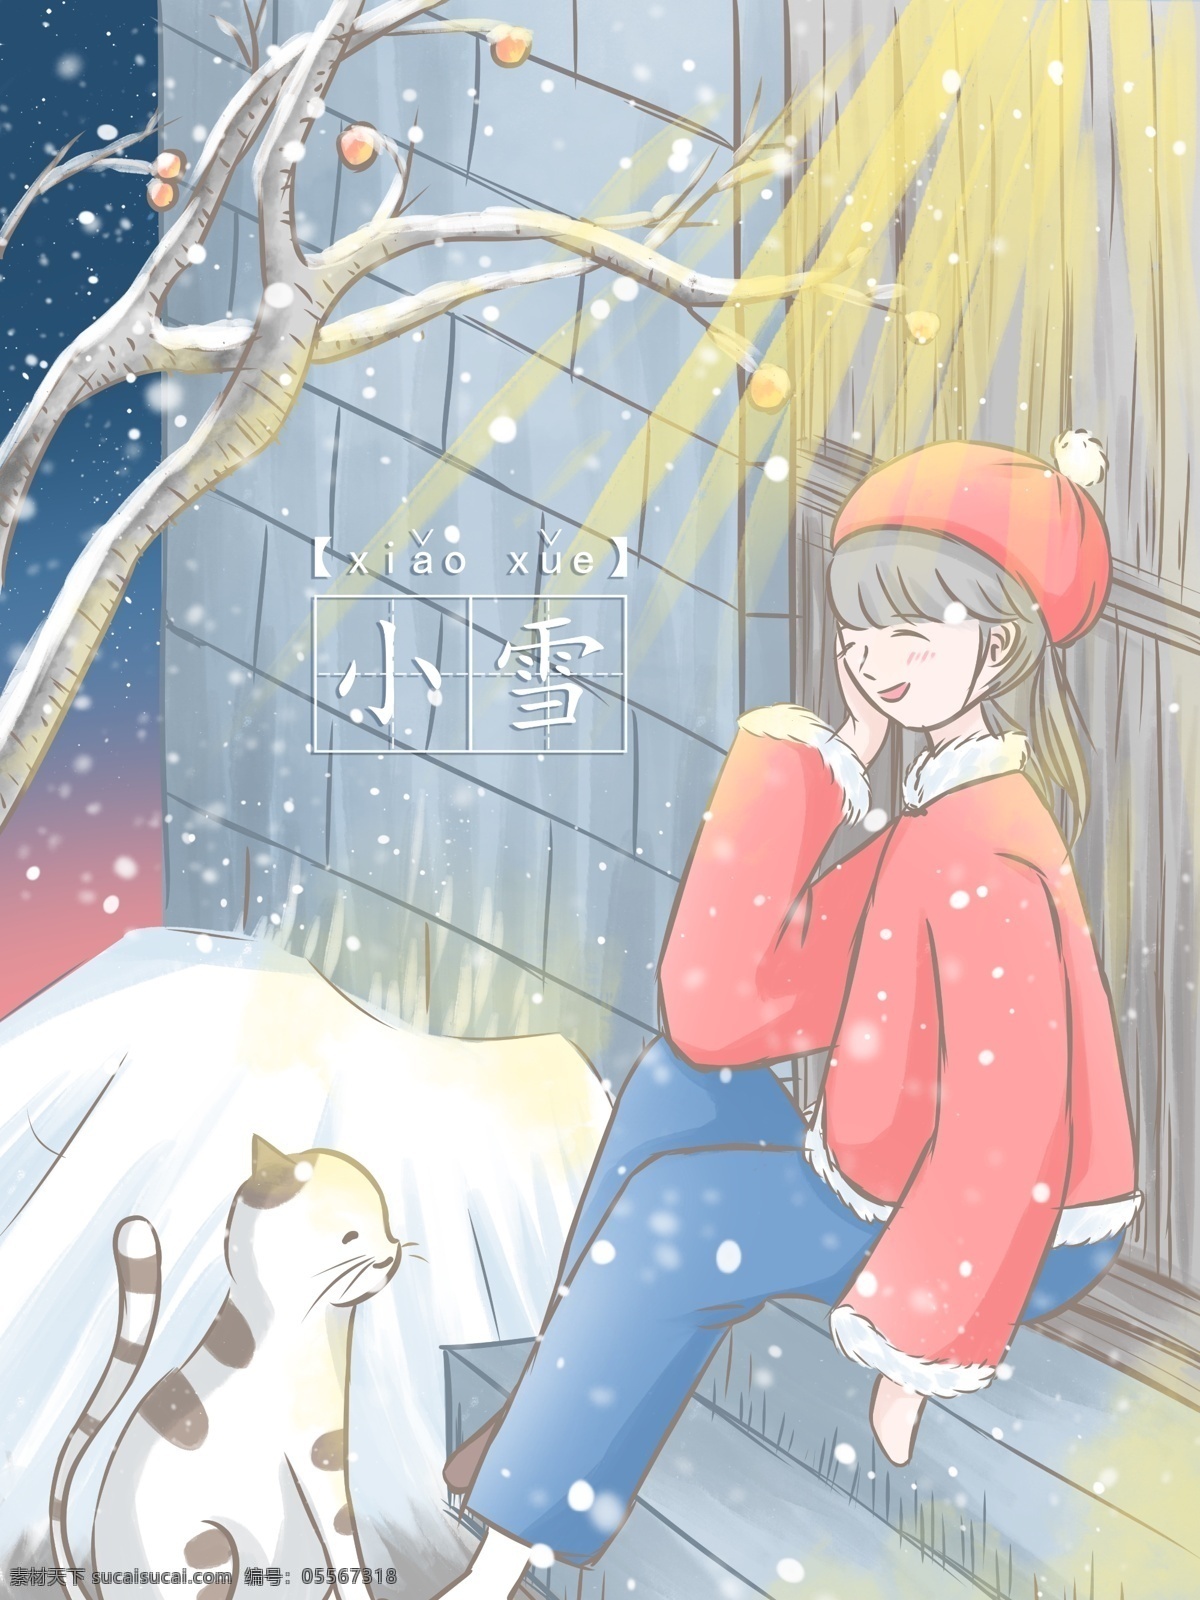 小雪 插画 冬夜 坐在 门前 看 雪 女孩 猫 门 灯光 清新 壁纸 冬天 石墙 台阶 水彩 治愈 背景 日签